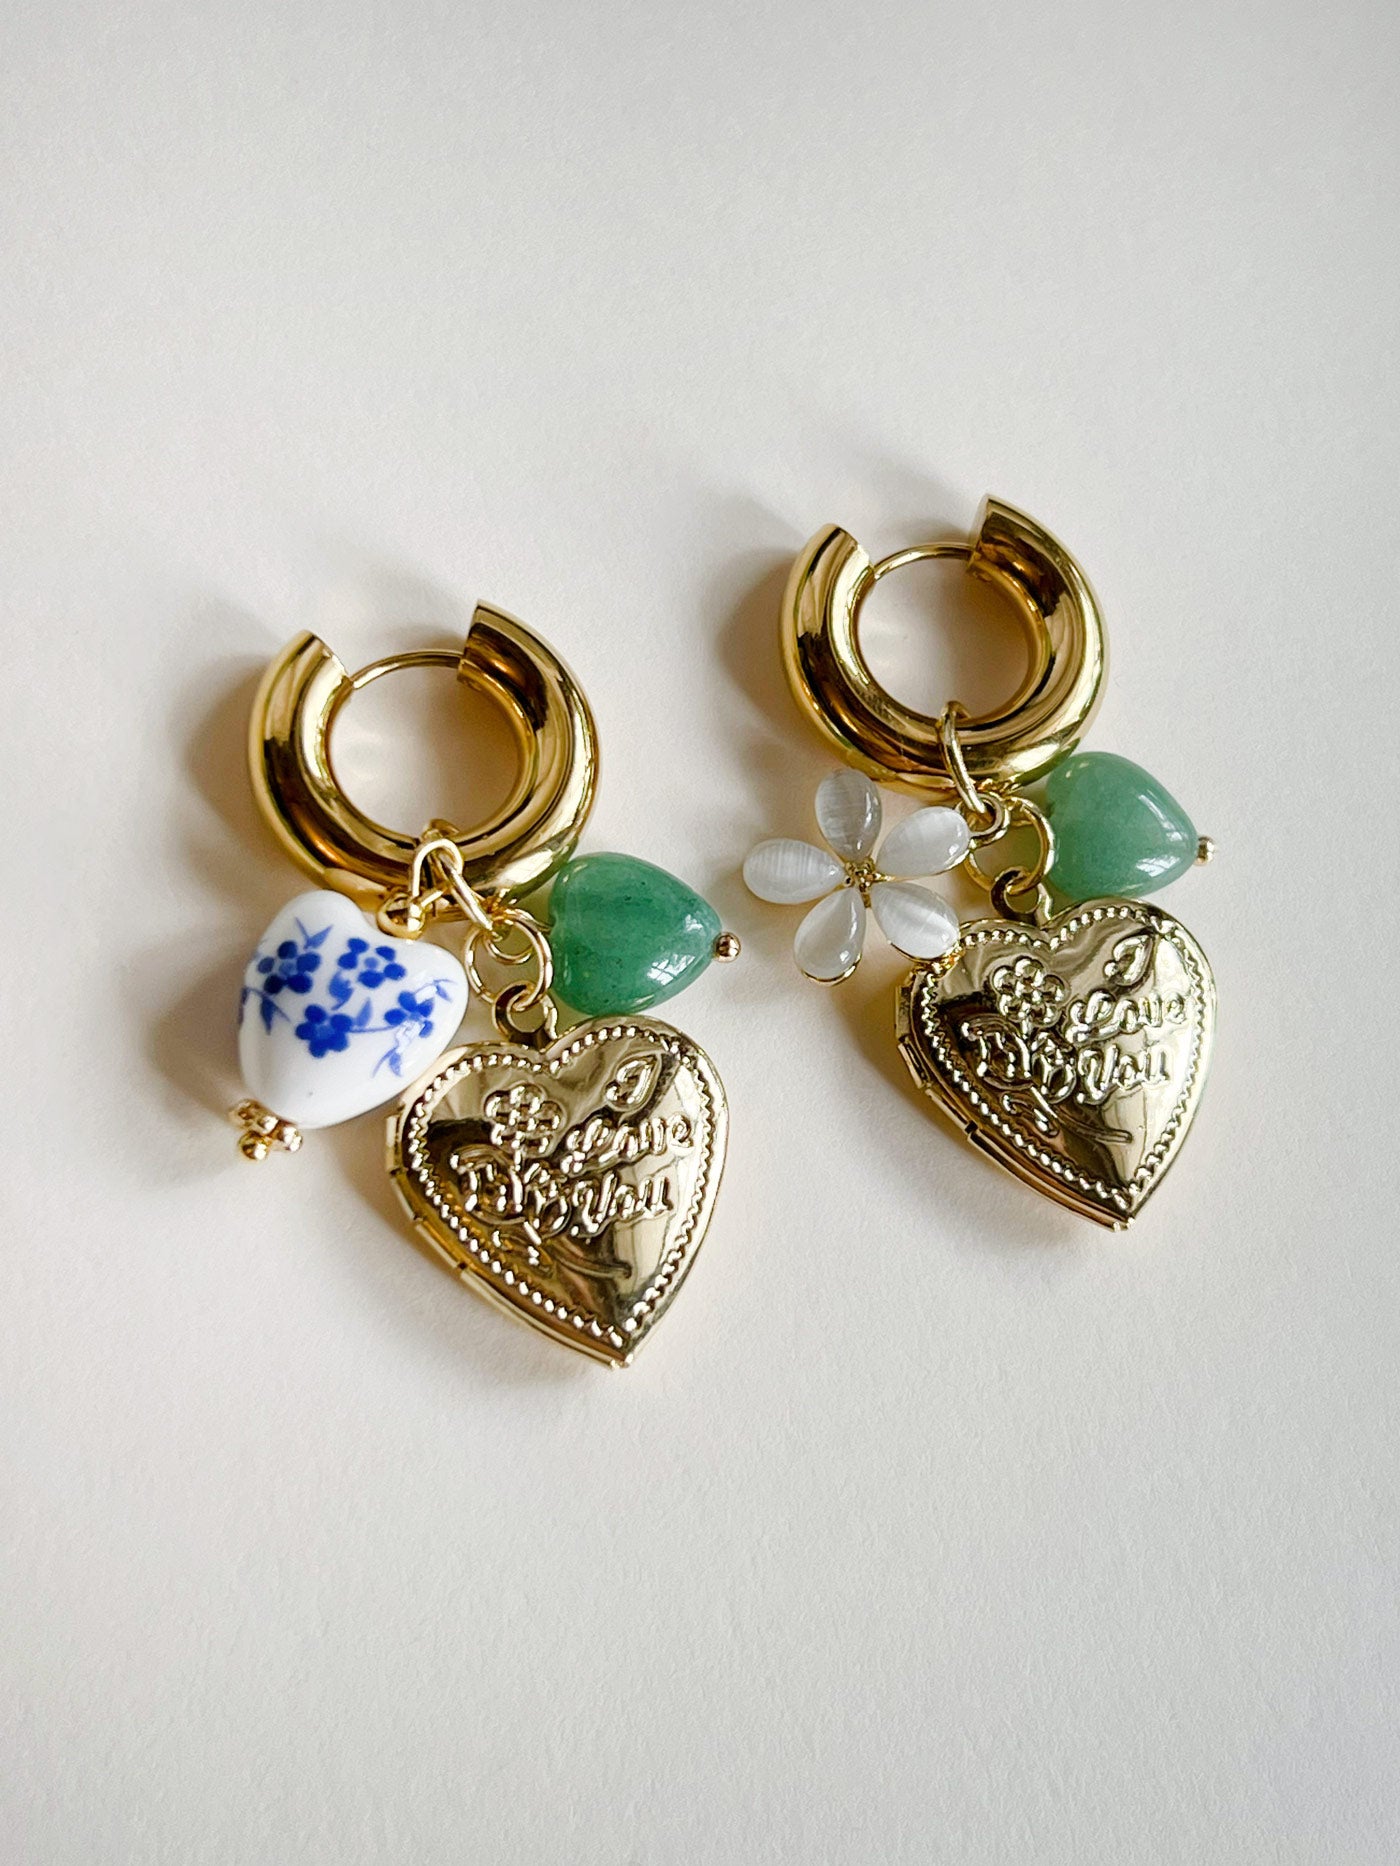 Cerceaux de médaillon en forme de cœur épais - Coeur en céramique bleue/Pierres vertes